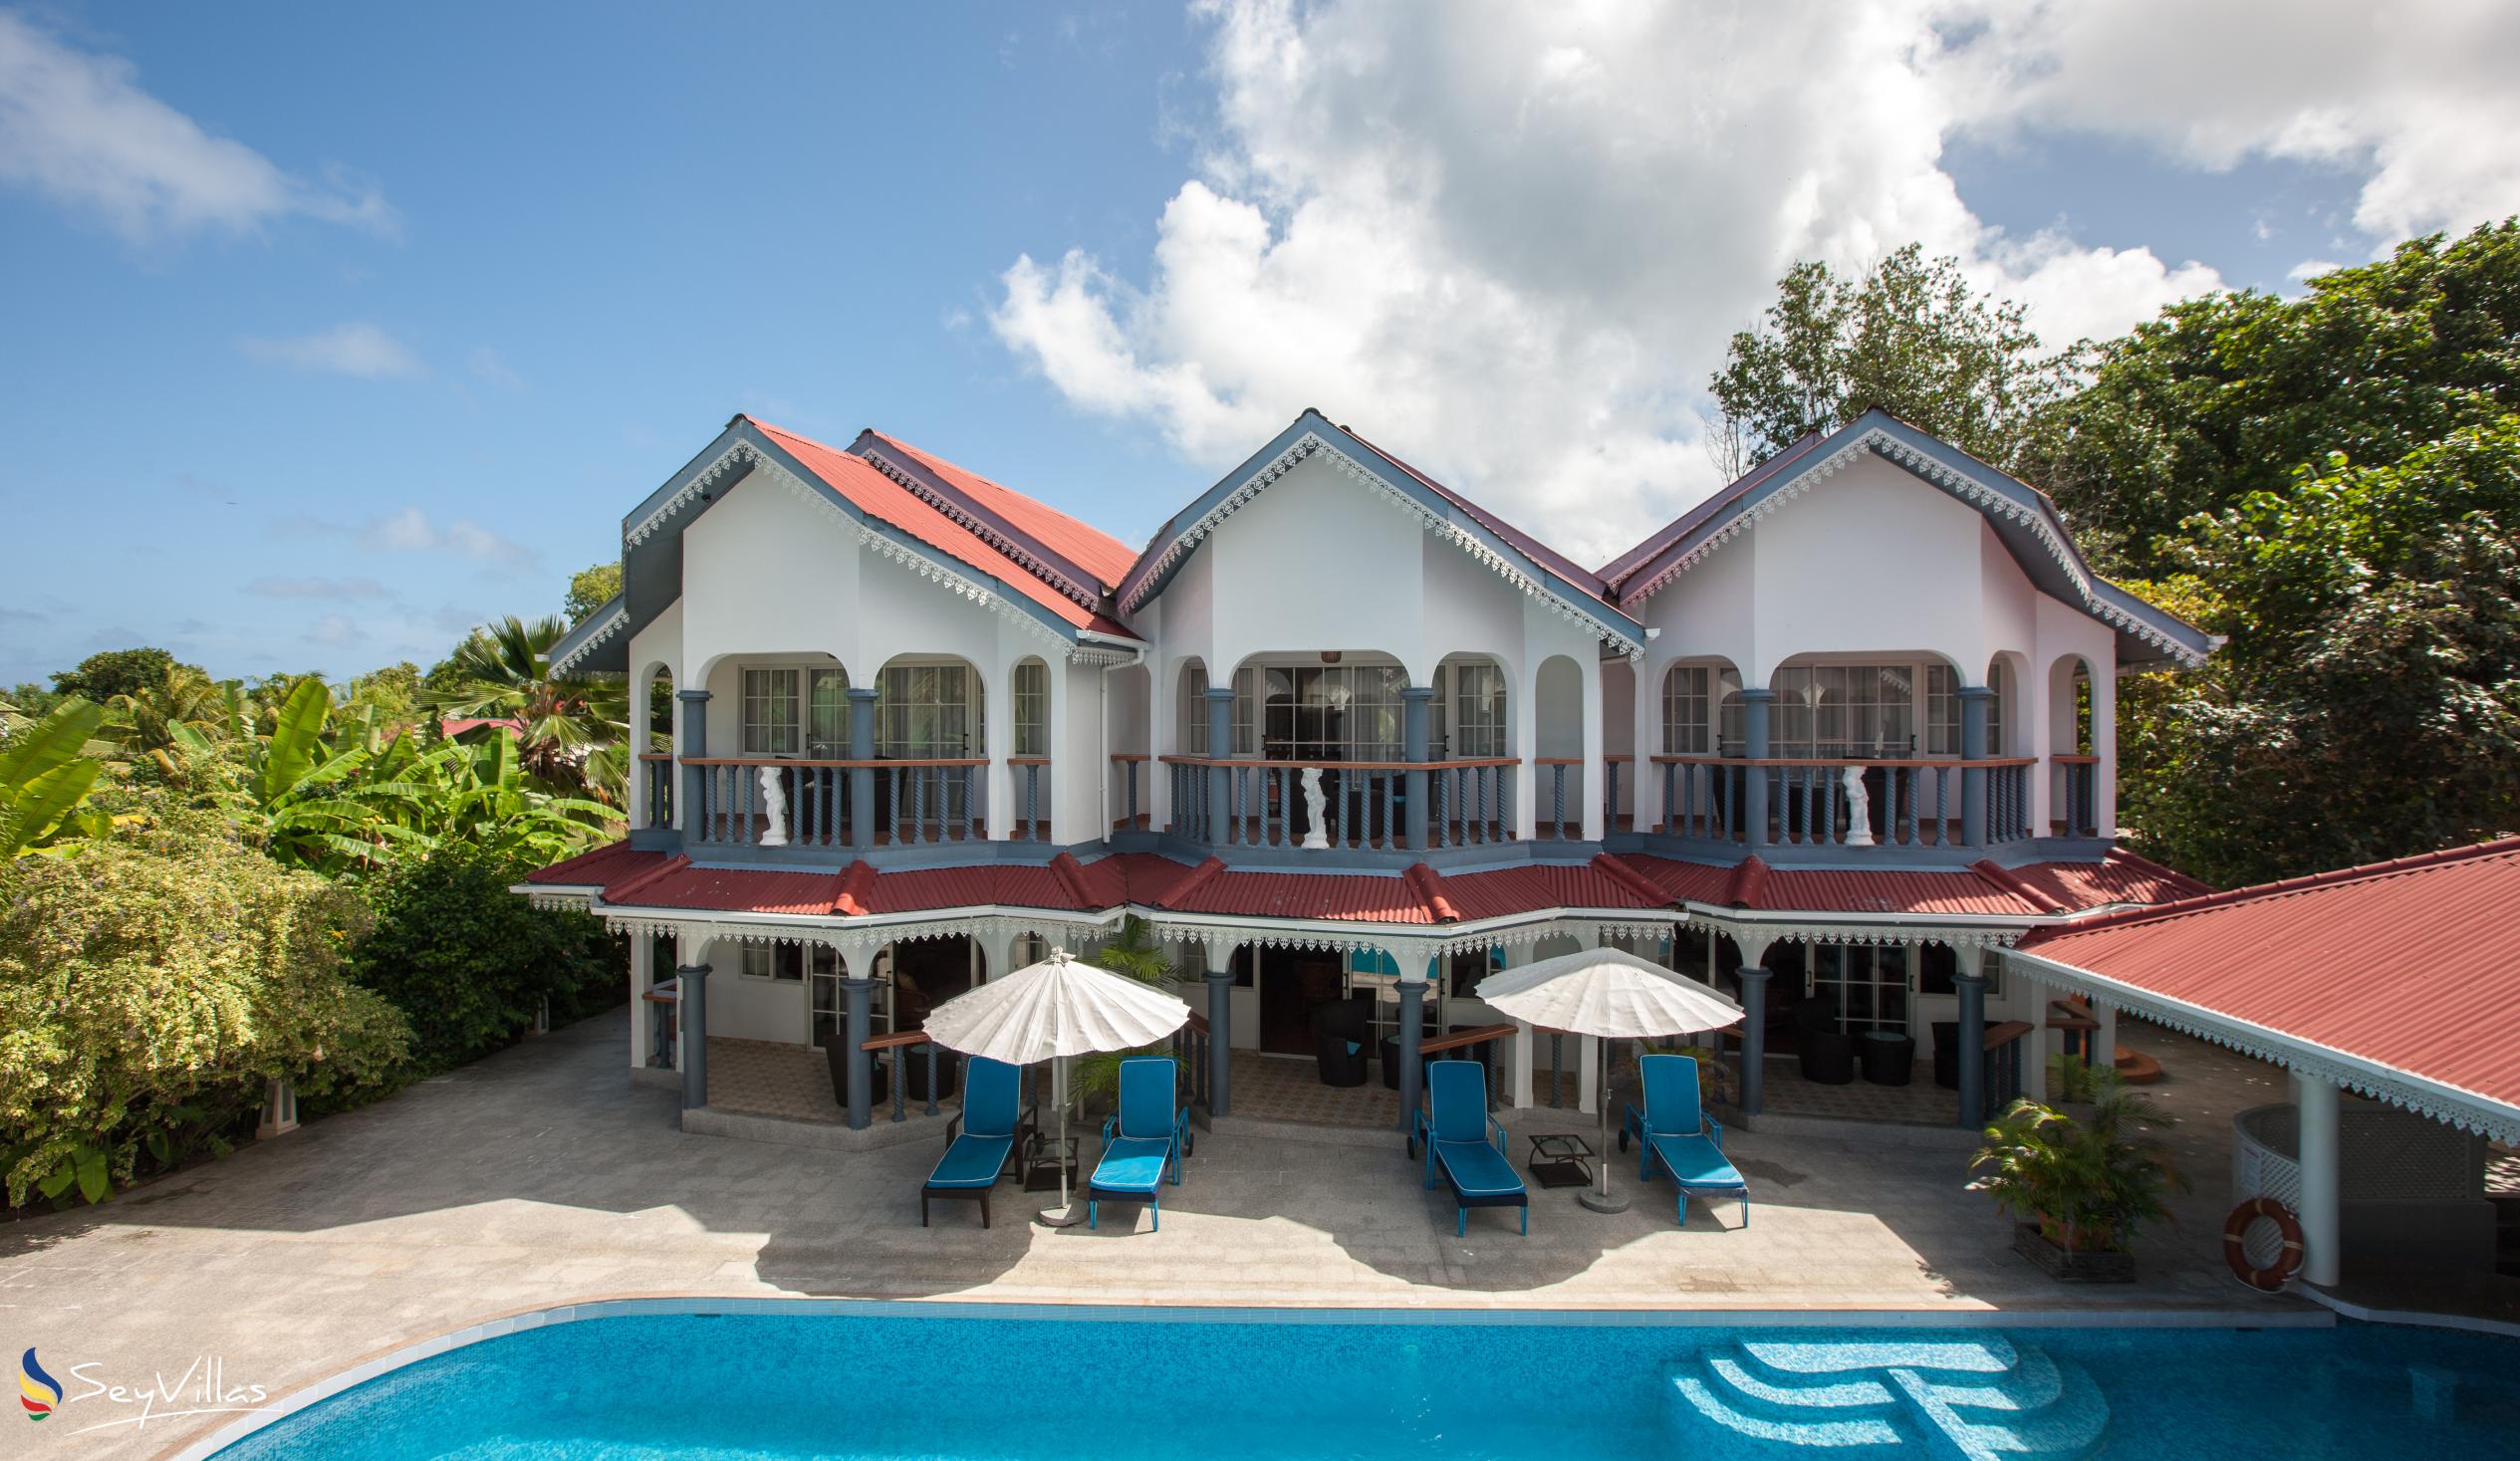 Foto 2: Chateau Sans Souci - Aussenbereich - Praslin (Seychellen)